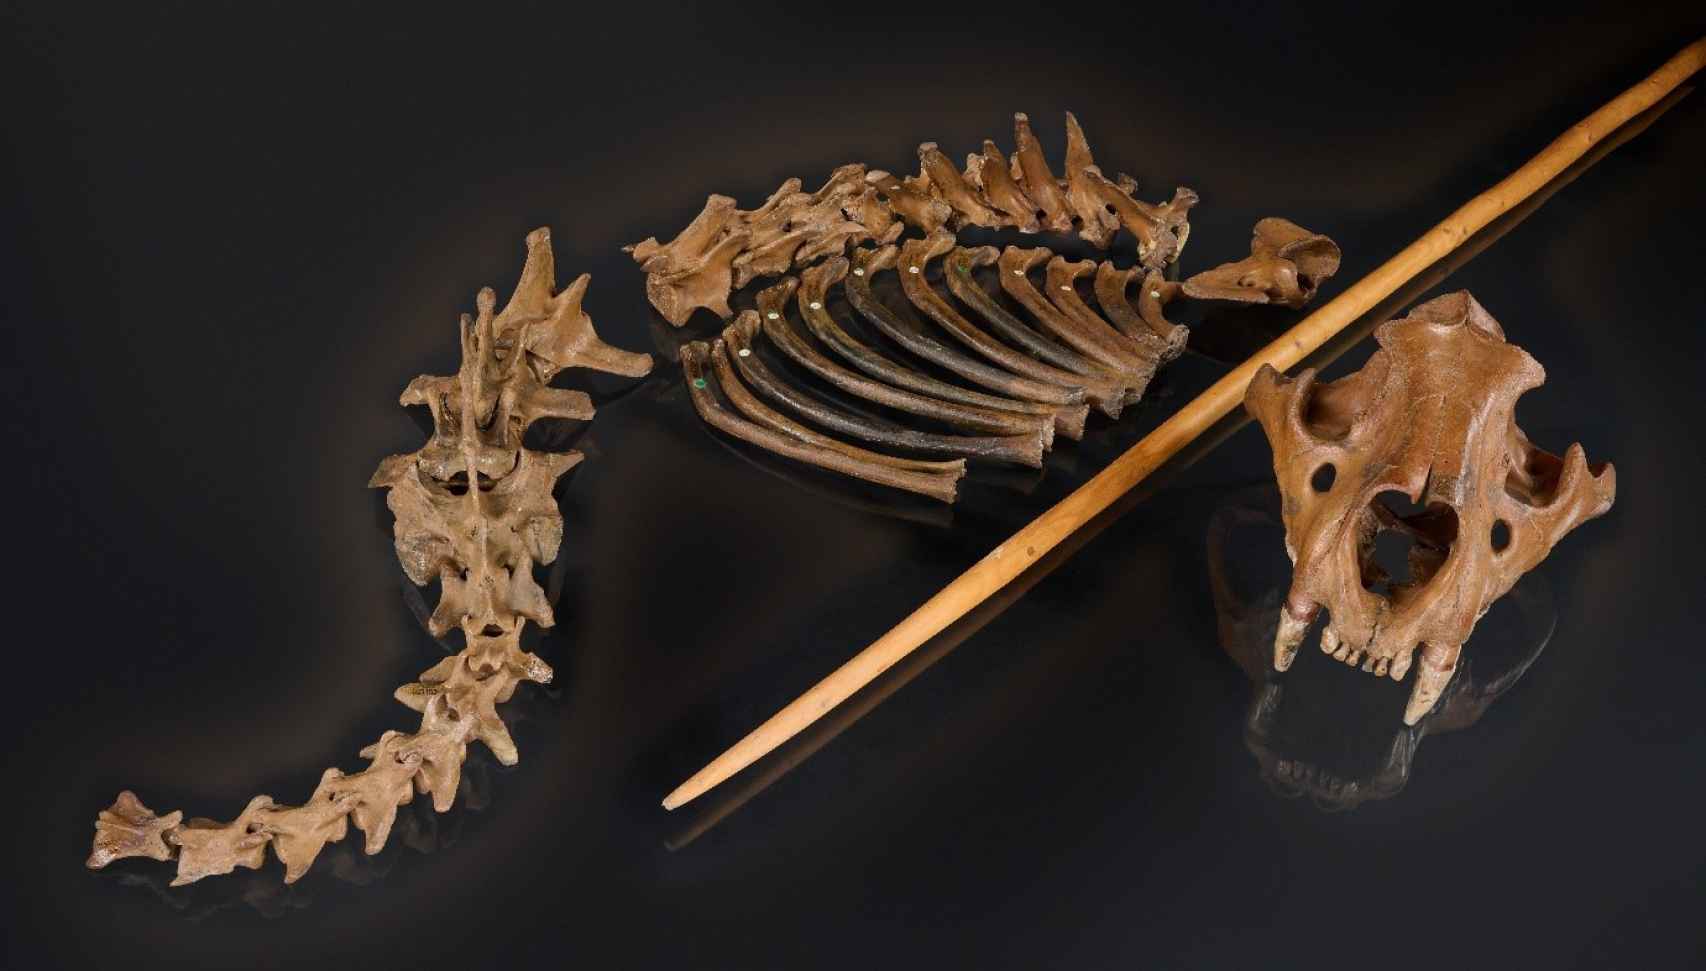 Los restos del león de las cavernas de Siegsdorf, junto a una reproducción de una lanza de madera similar a las utilizadas por los neandertales.